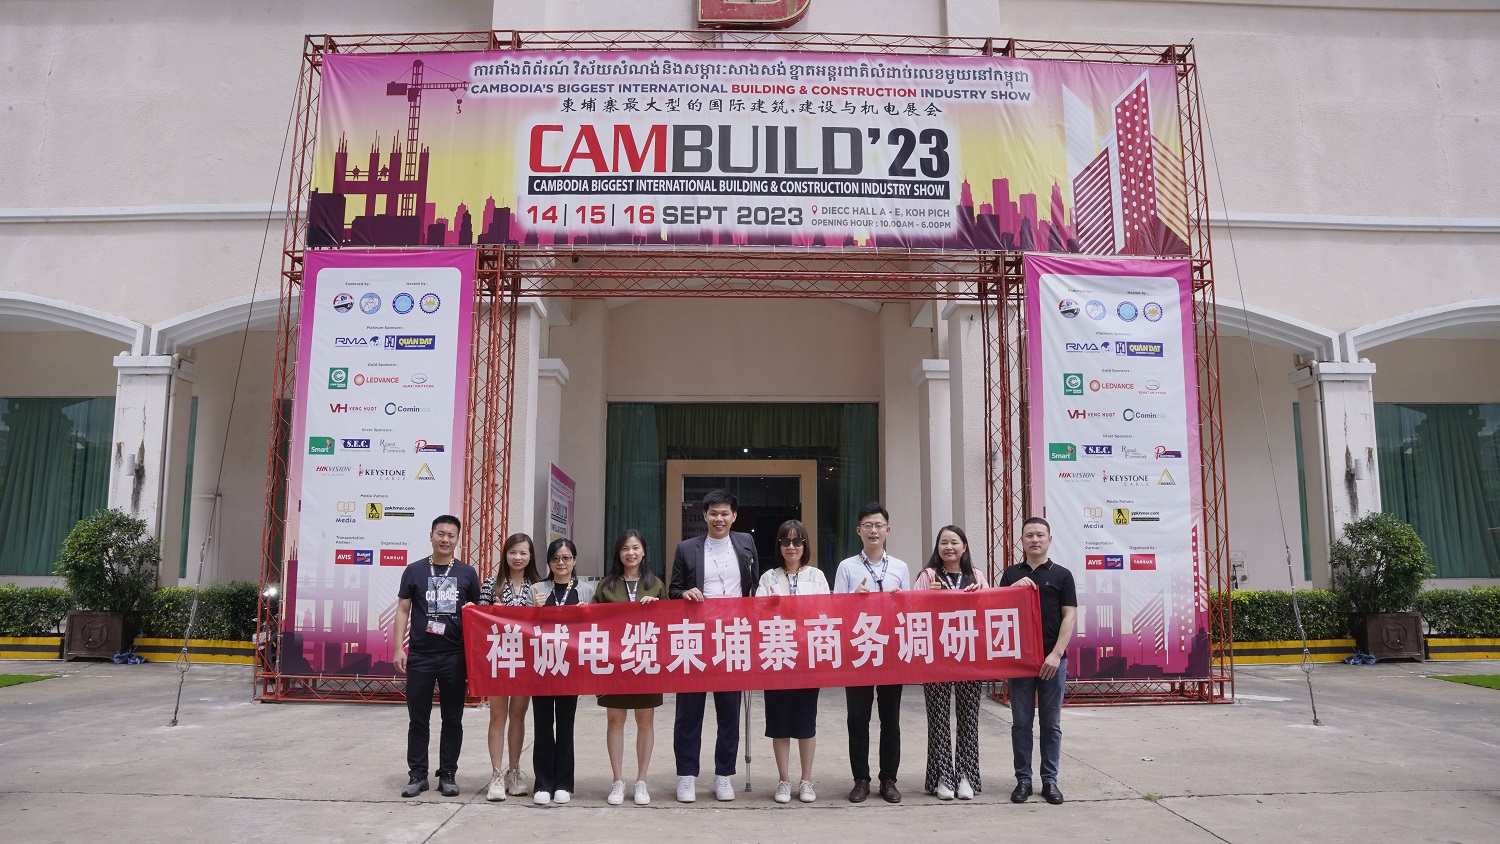 粵佳信公司亮相柬埔寨國際建筑建材展覽會——CAMBUILD 2023！